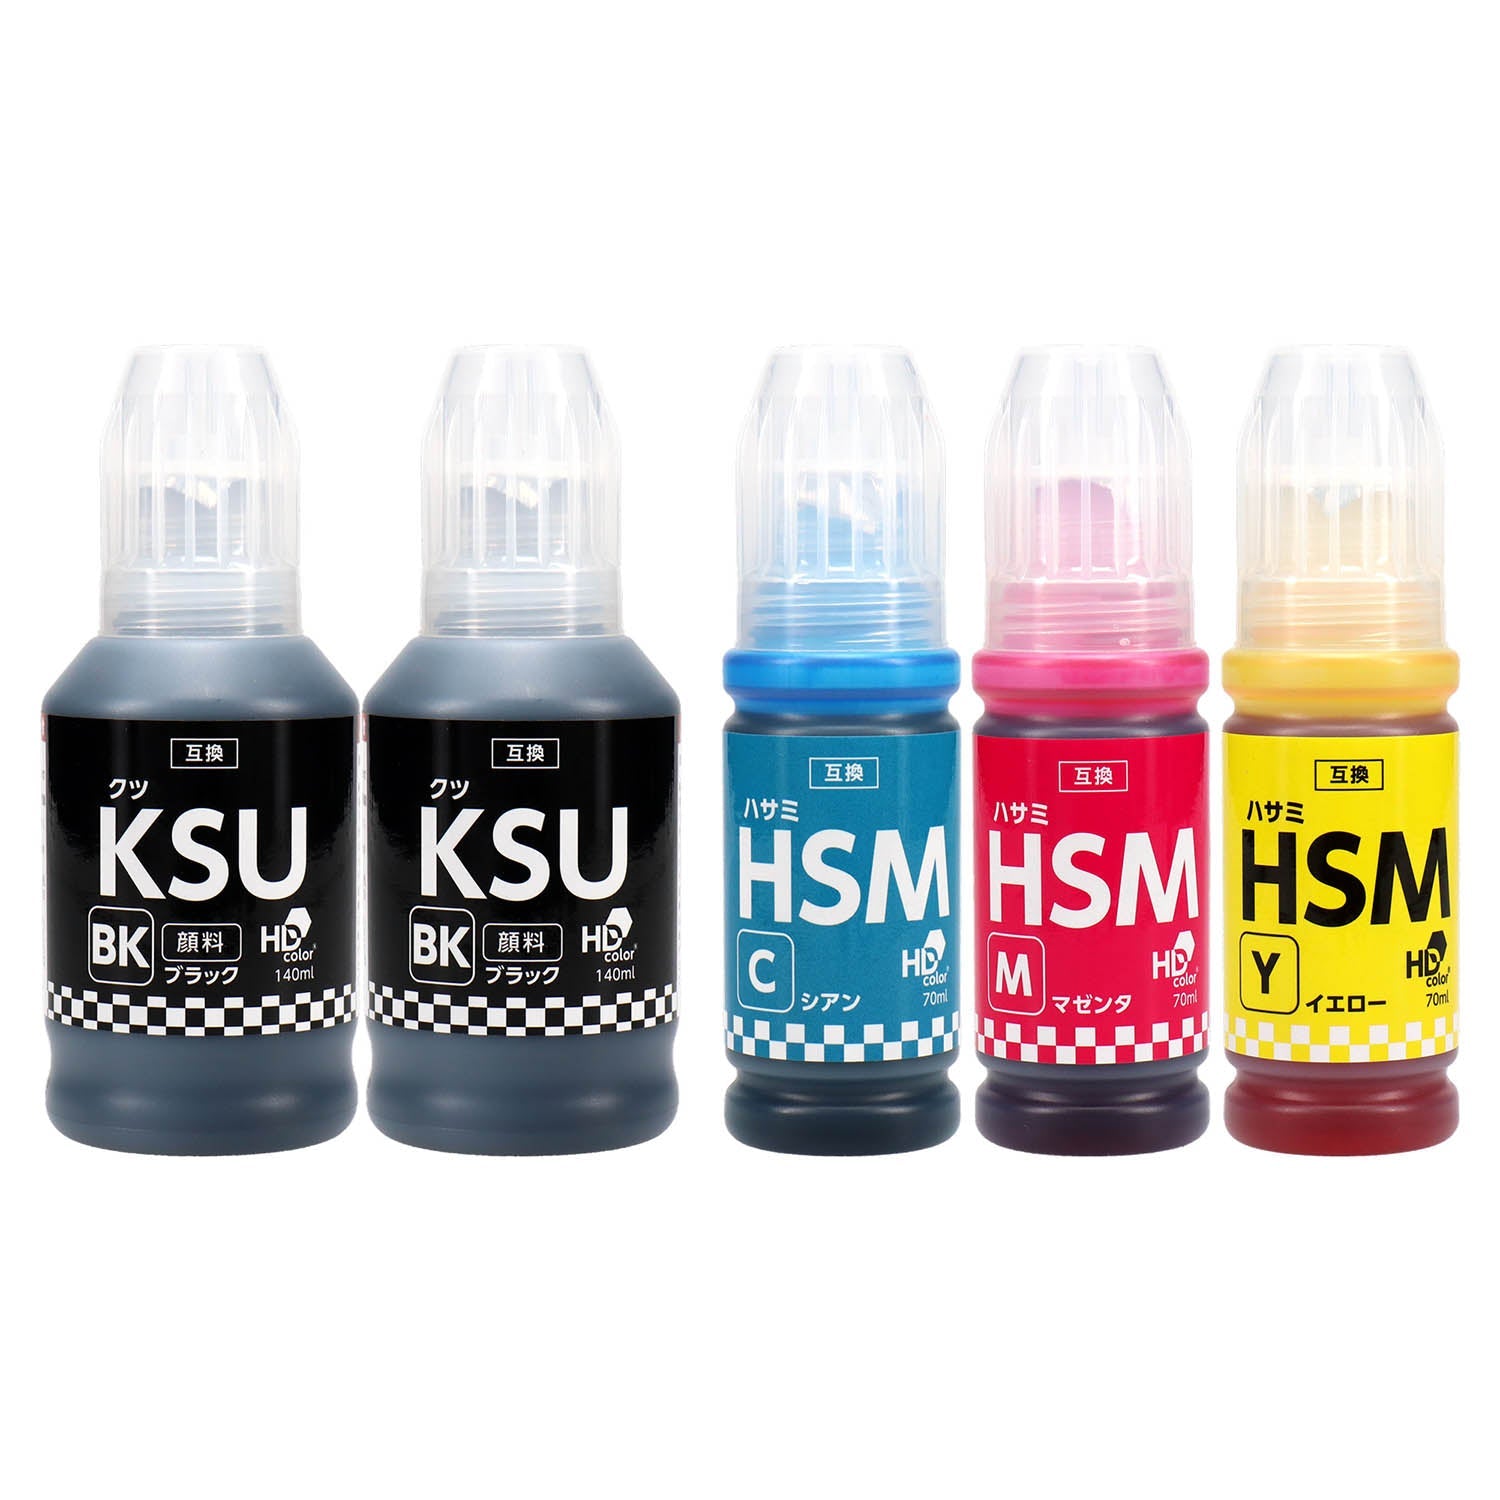 エプソン用 KSU-HSM (クツ・ハサミ) 互換インクボトル 4色セット